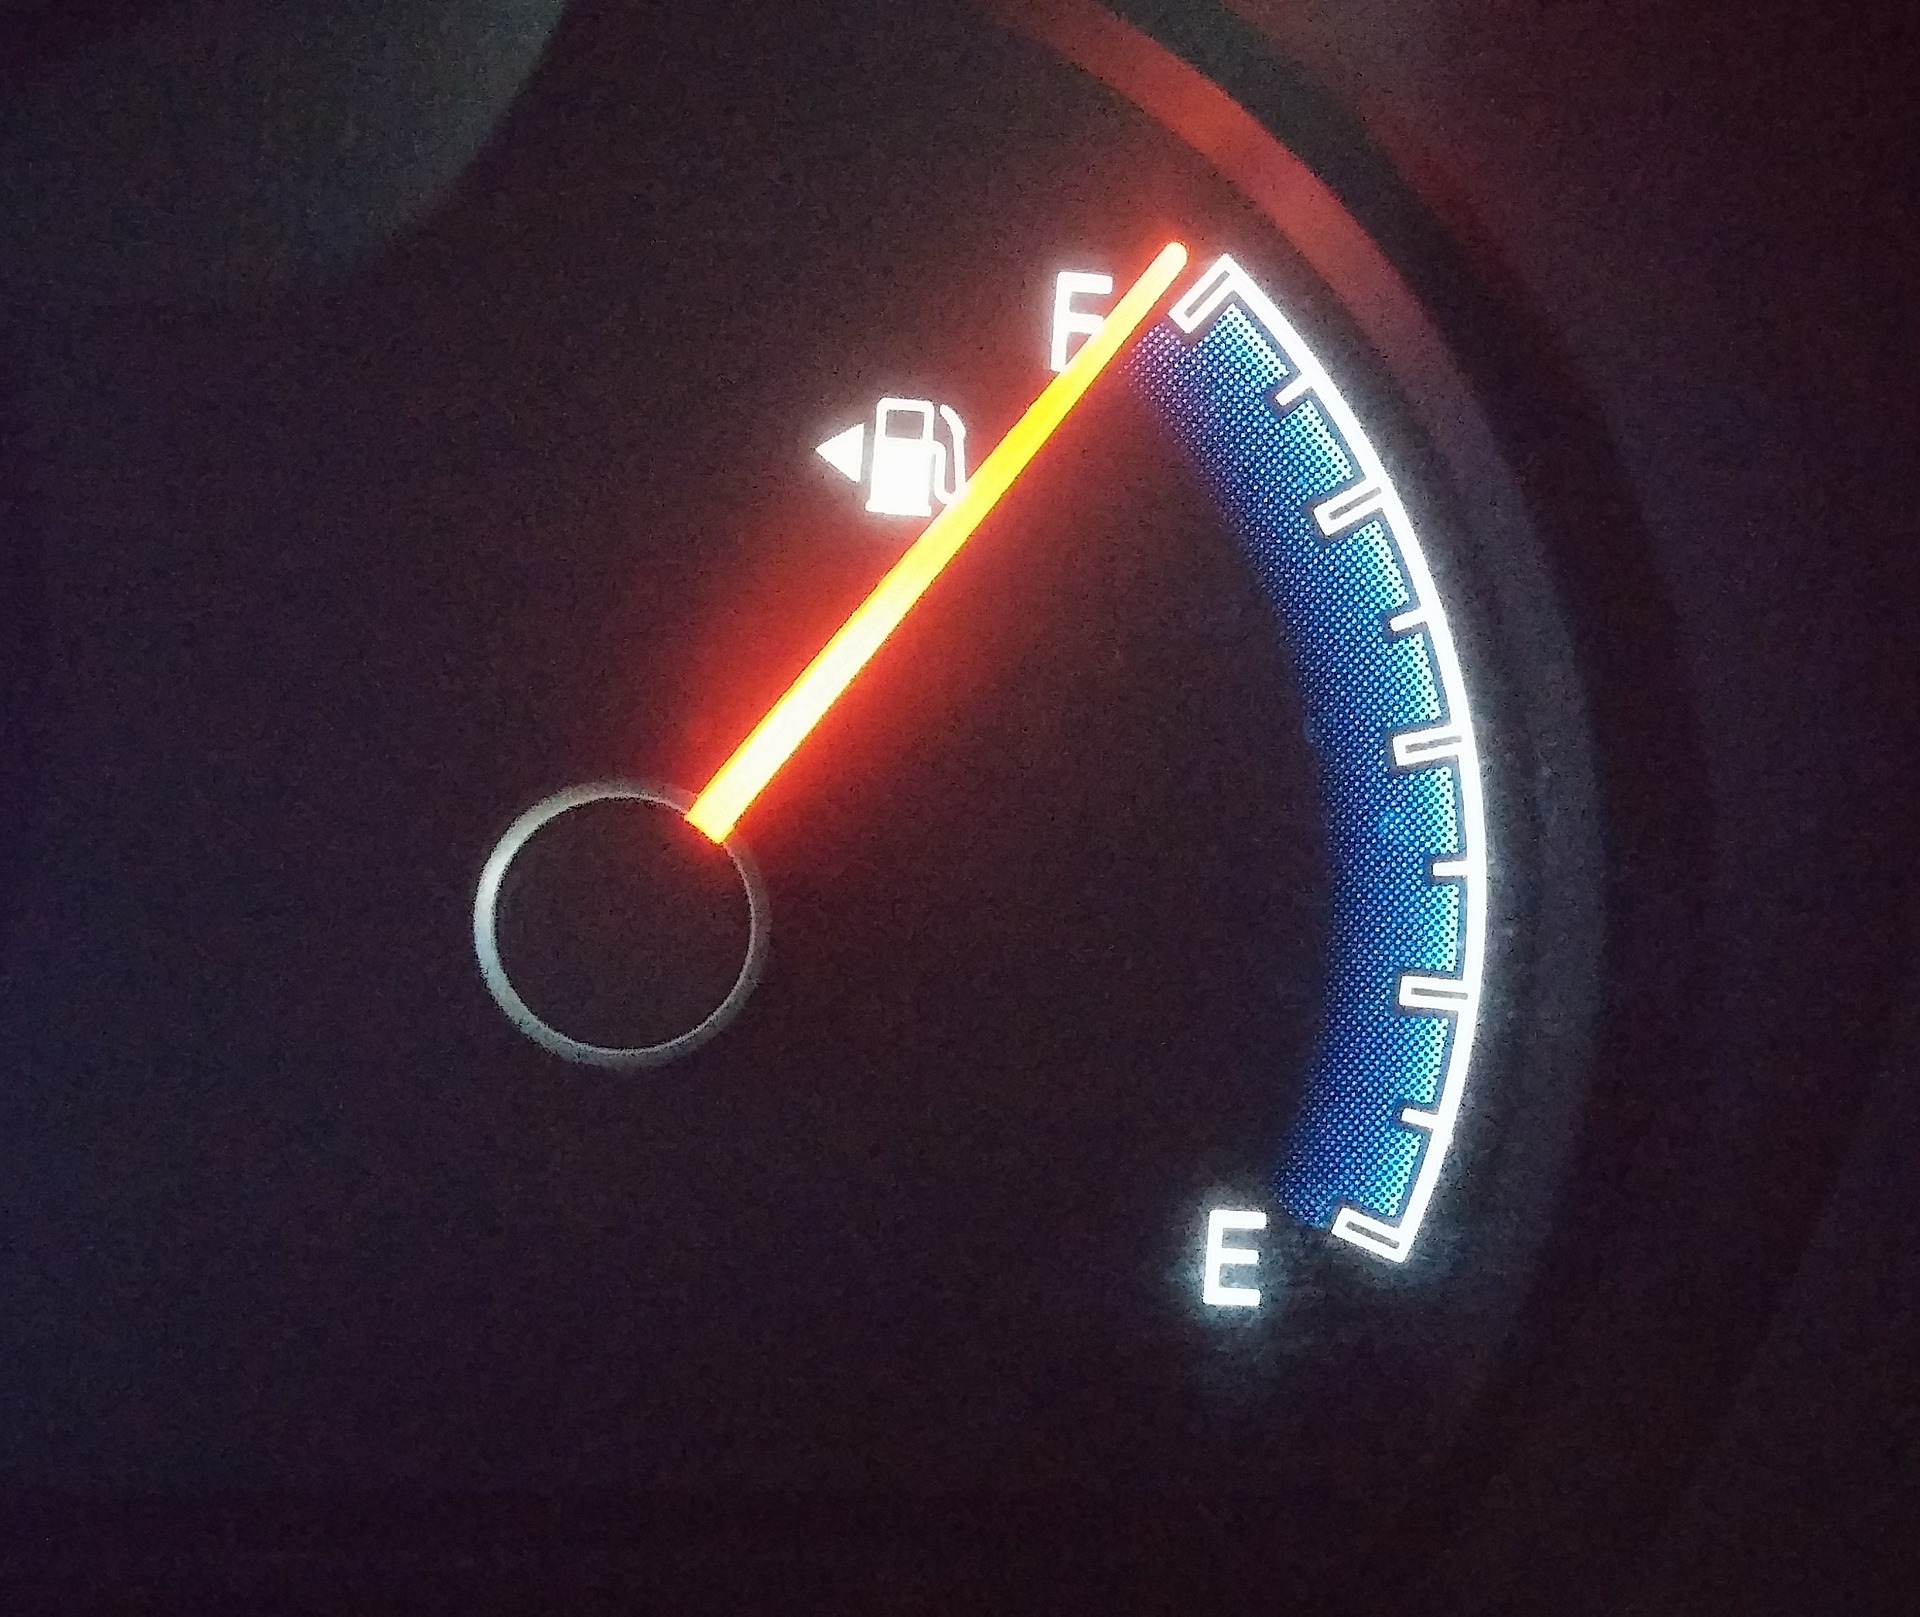 ガソリンの給油ランプがついてから何キロ走れる 慌てなくても大丈夫 自動車メンテナンスお役立ち情報blog